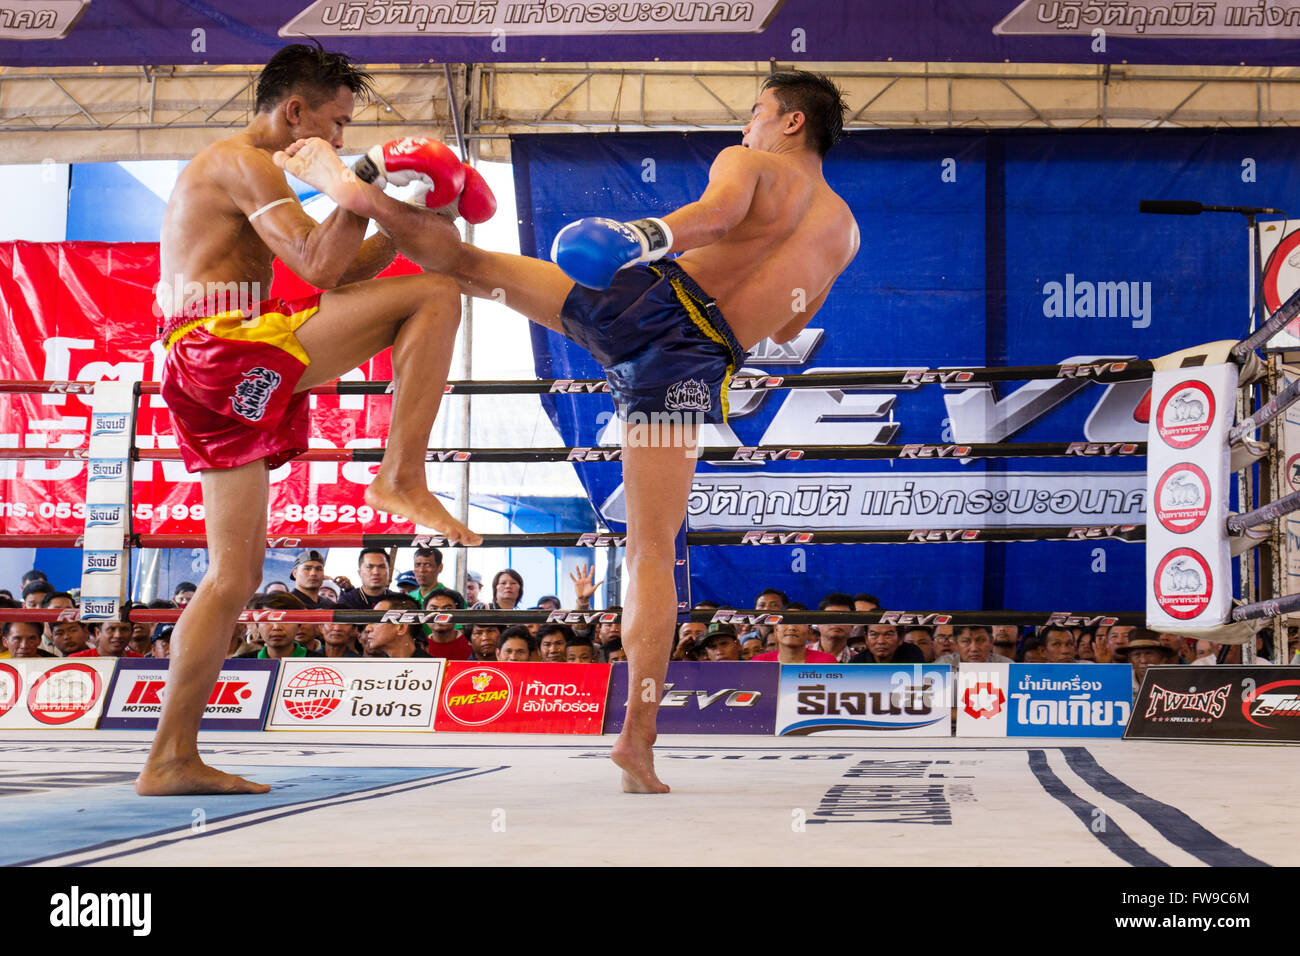 Le Muay Thai, boxe thaïe, deux hommes se battre dans le ring de boxe, Thaïlande Banque D'Images